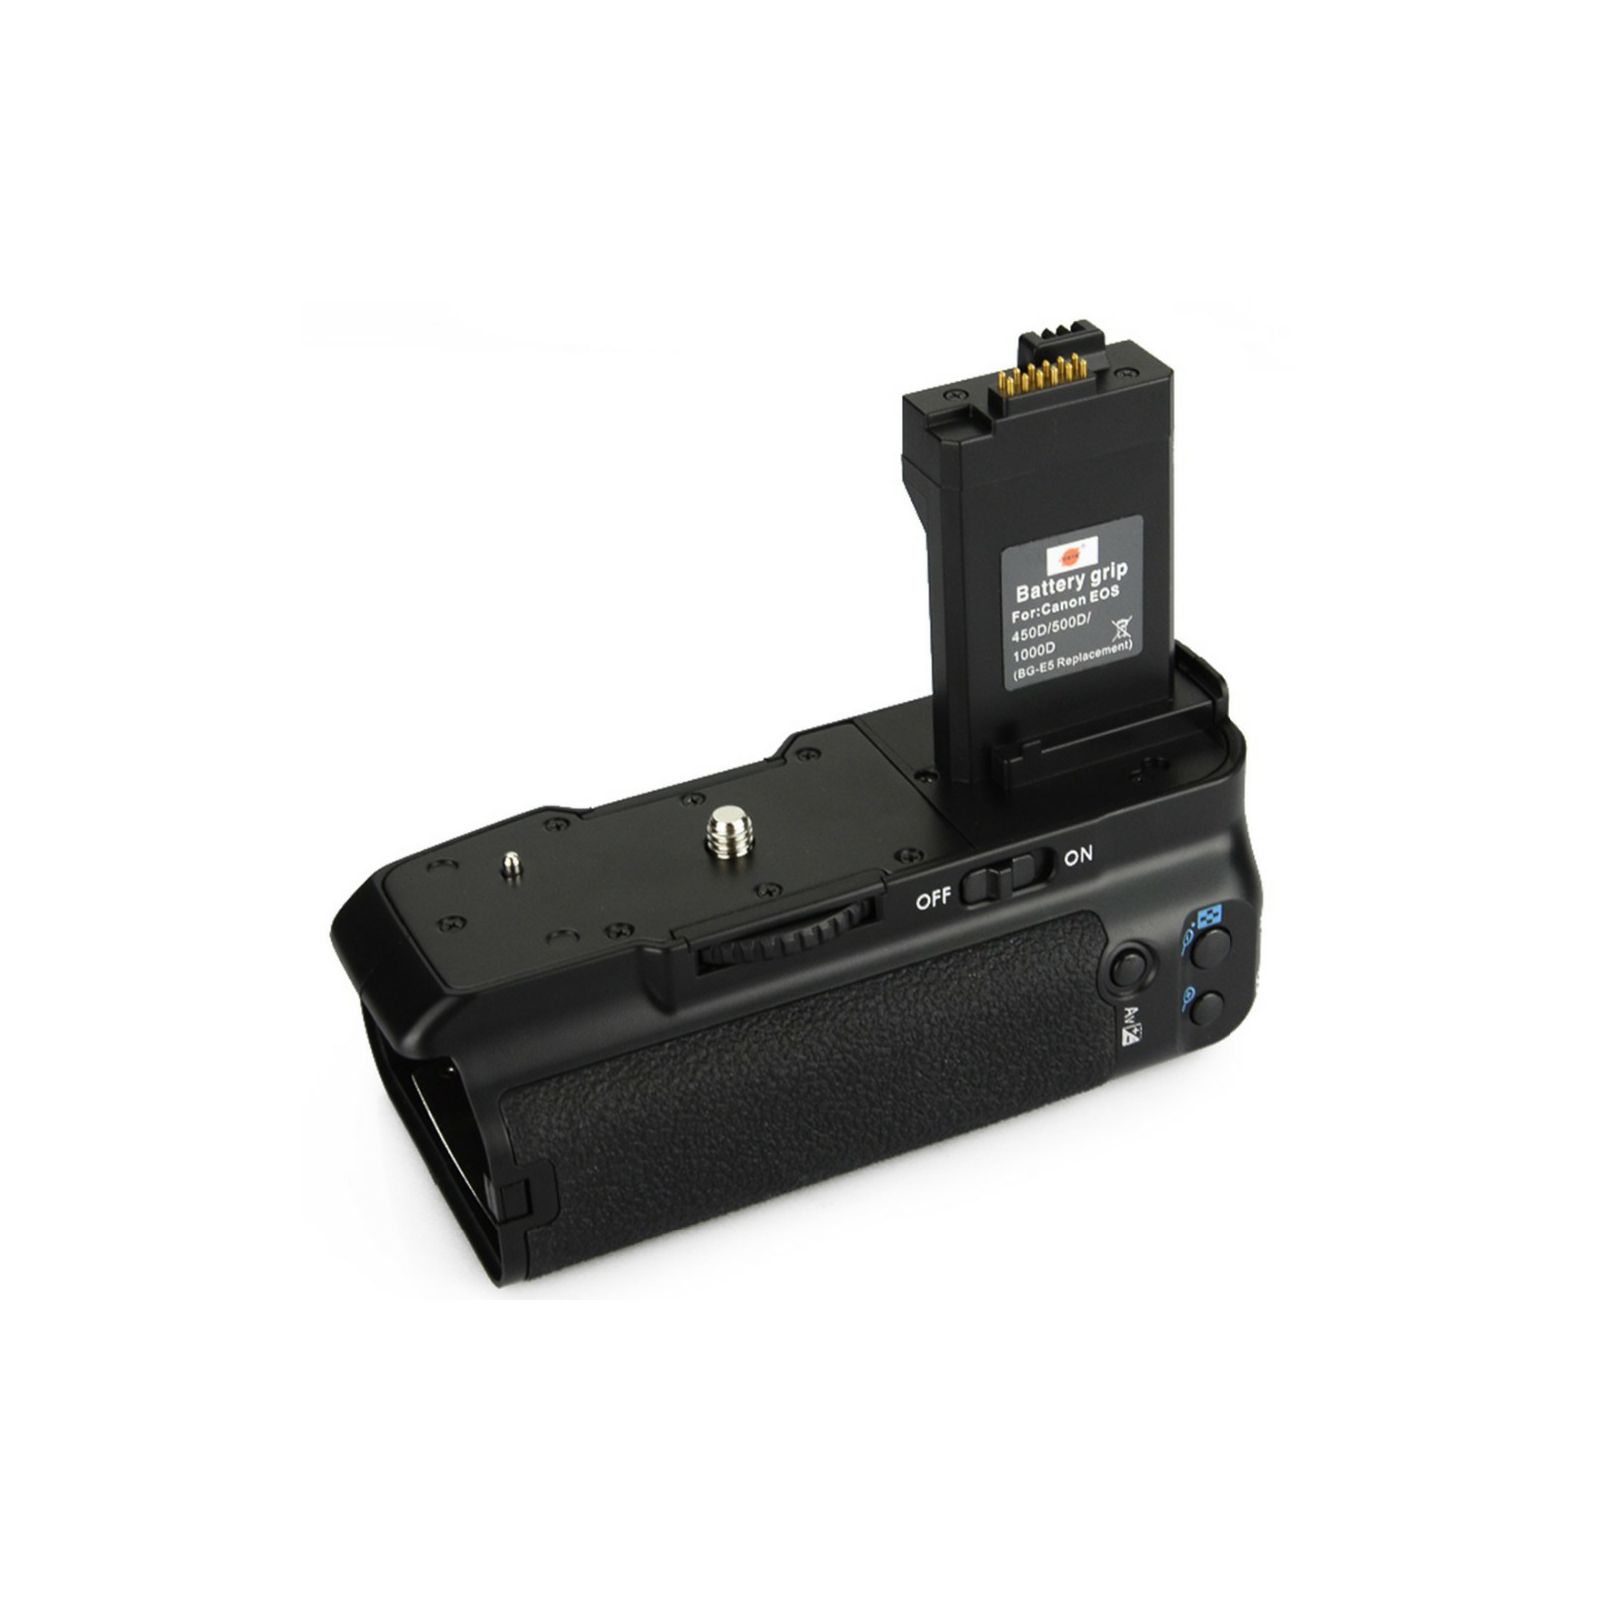 Canon BG-E5 Battery Grip for EOS 500D 450D 1000D držač baterija (AC3052B001AA)